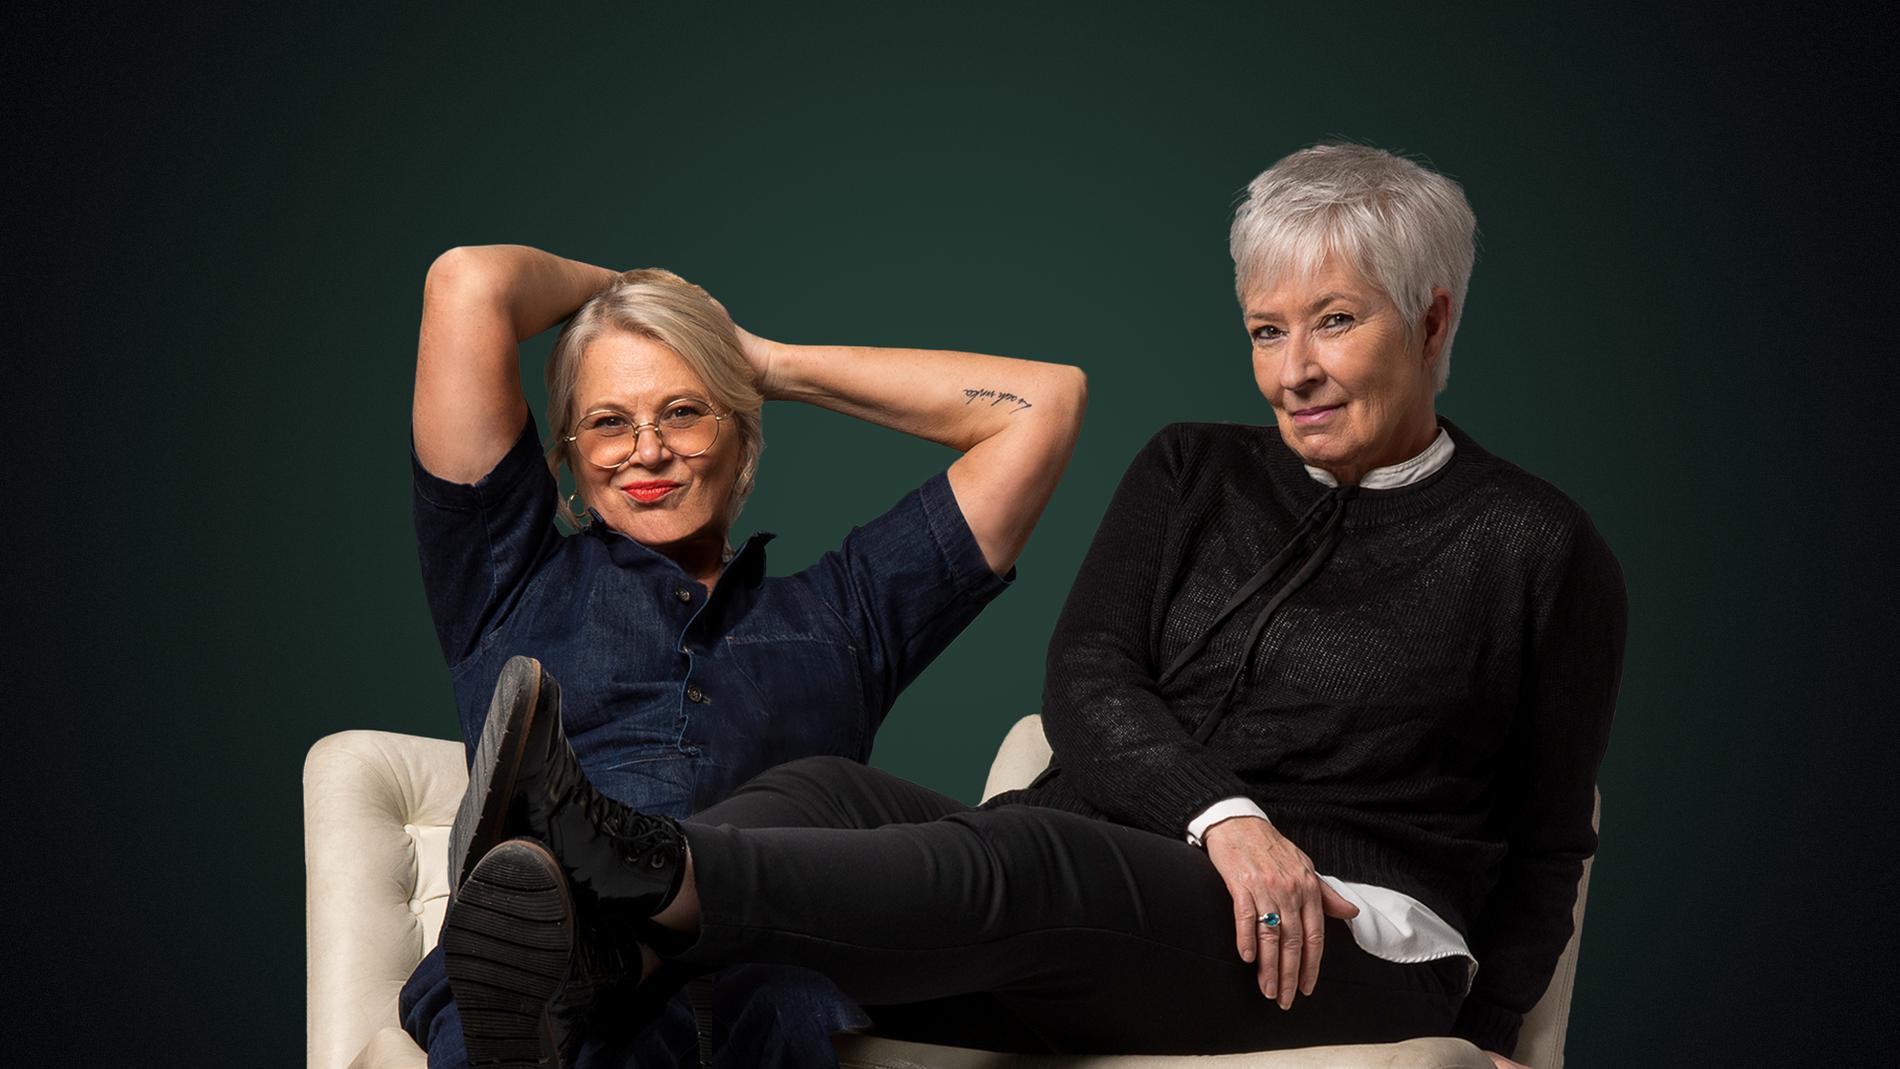 Helena von Zweigbergk och Mona Sahlin har podcasten ”Sahlin och Zweigbergk” ihop.